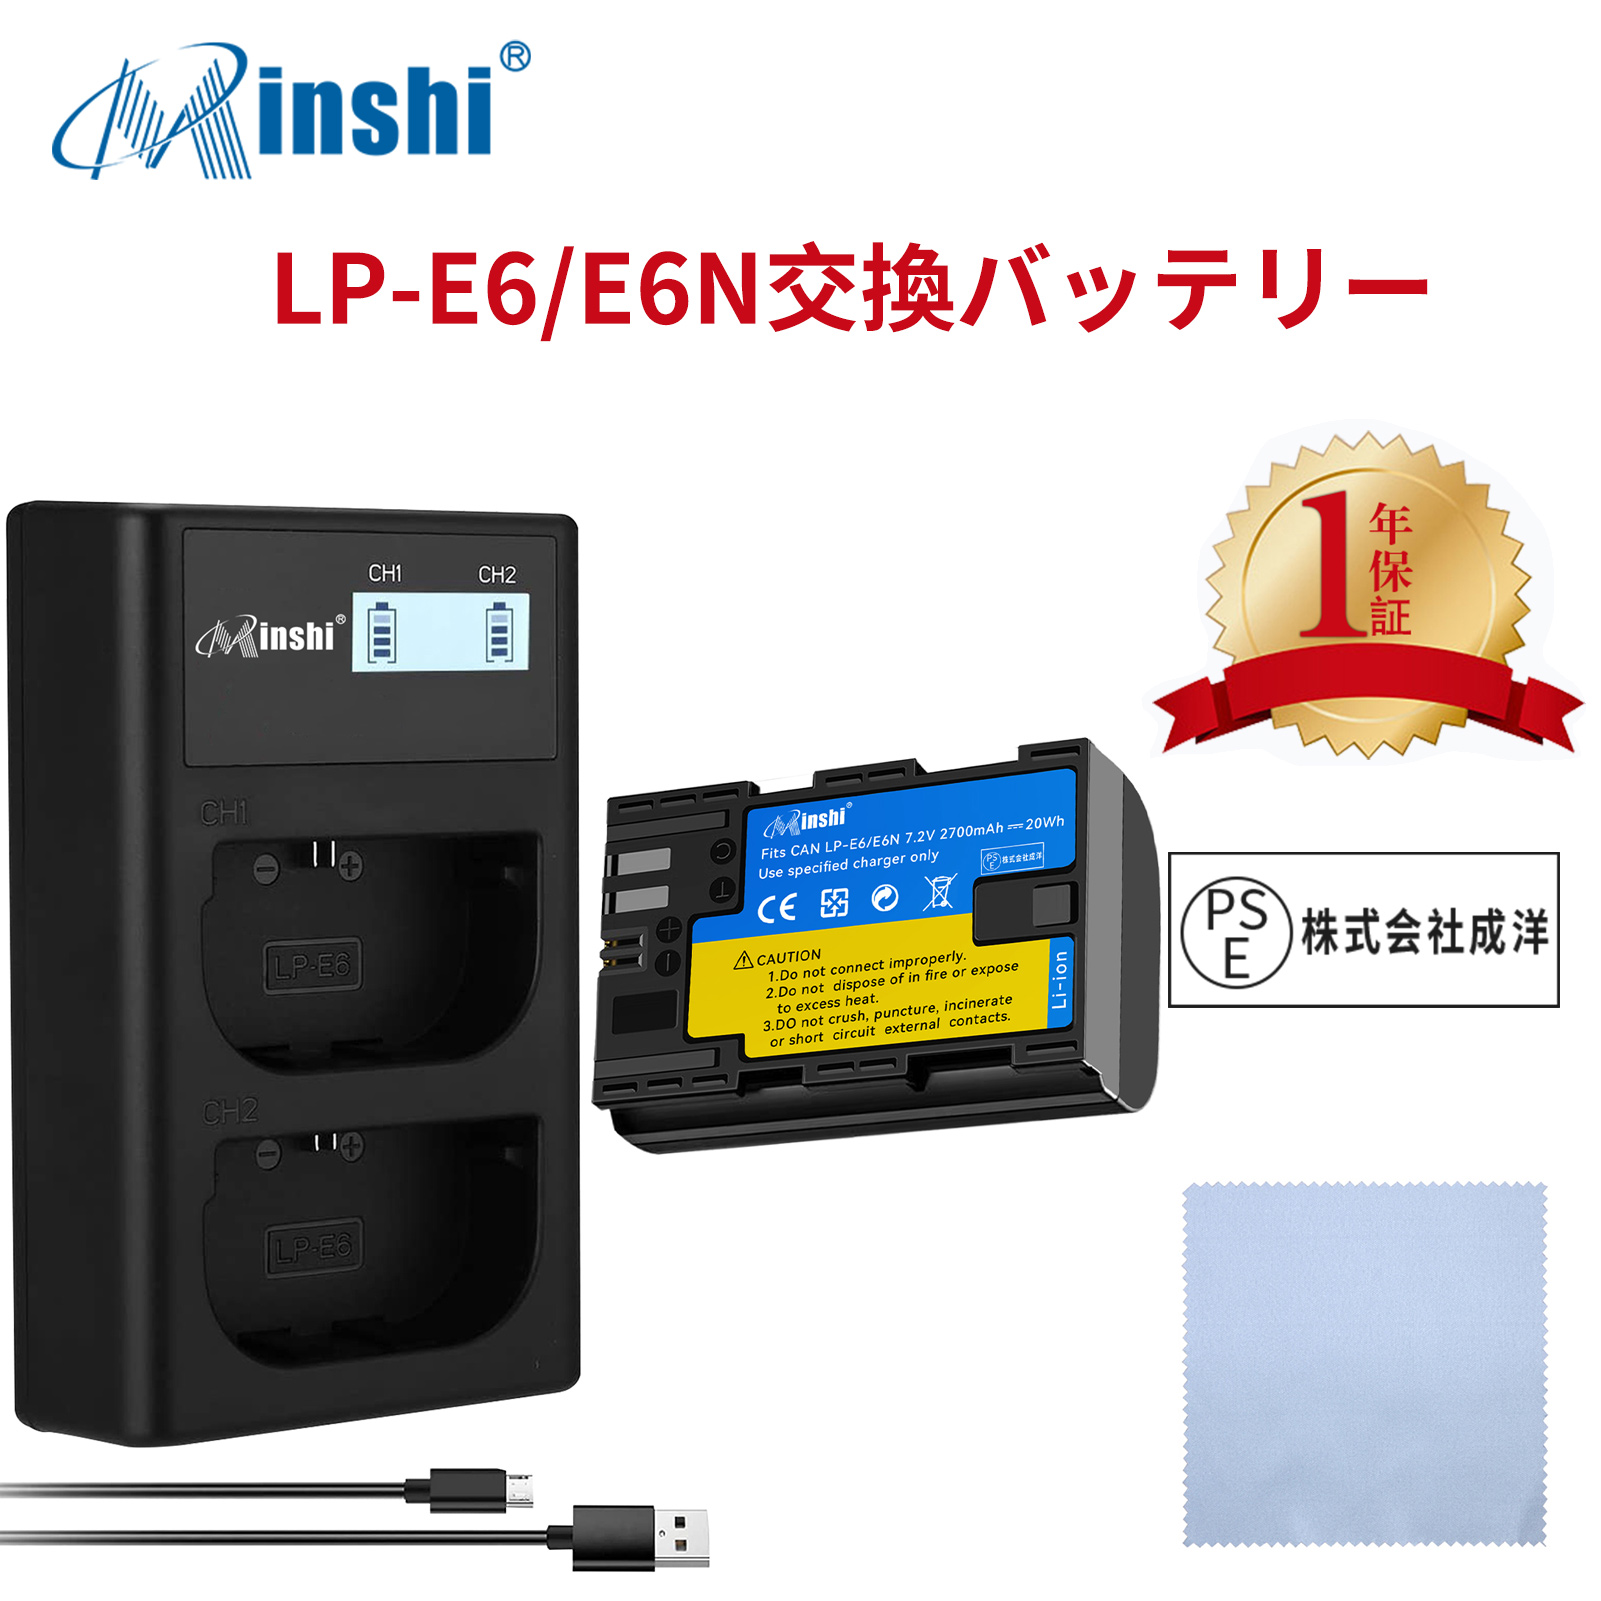 【セット】minshi Canon  EOS 60D  LP-E6NH LP-E6N EOS6D CANON 80D 【2700mAh 7.2V 】高品質交換用バッテリー